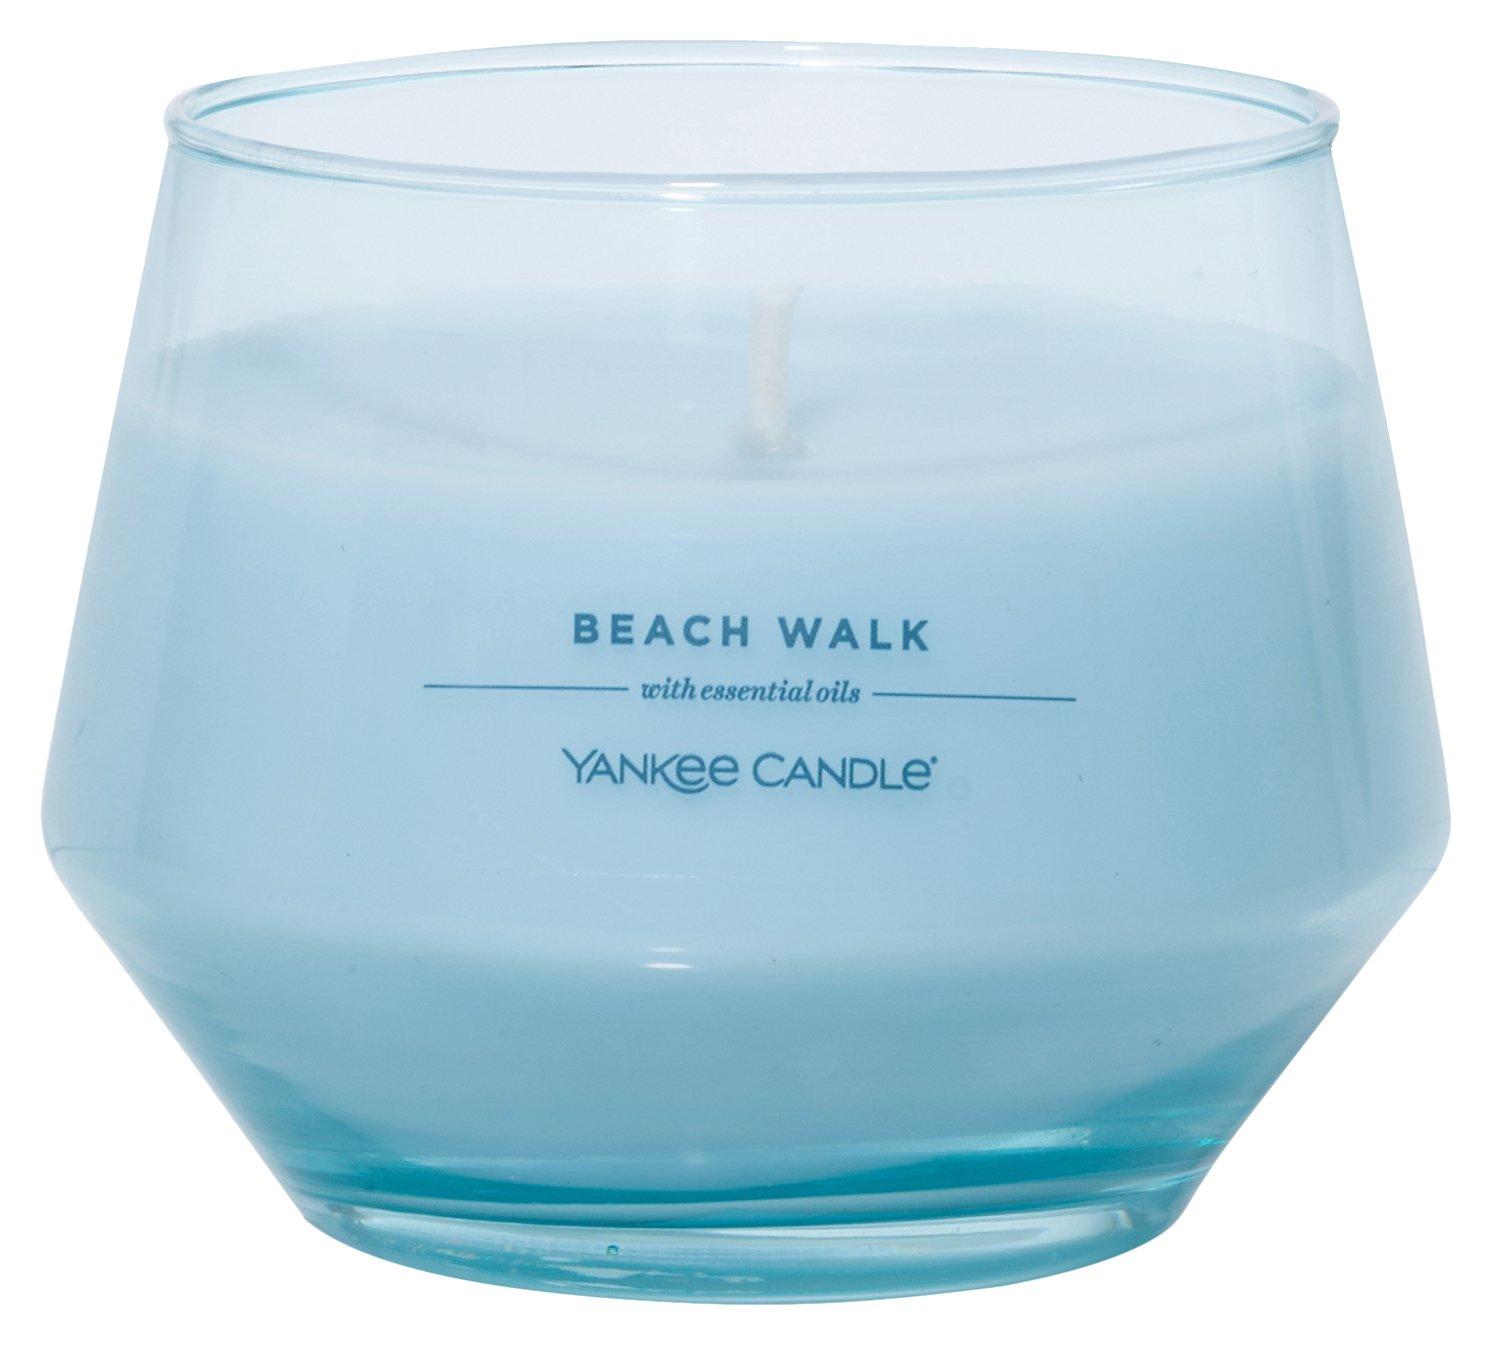 Yankee Candle 10oz Beach Walk Candle